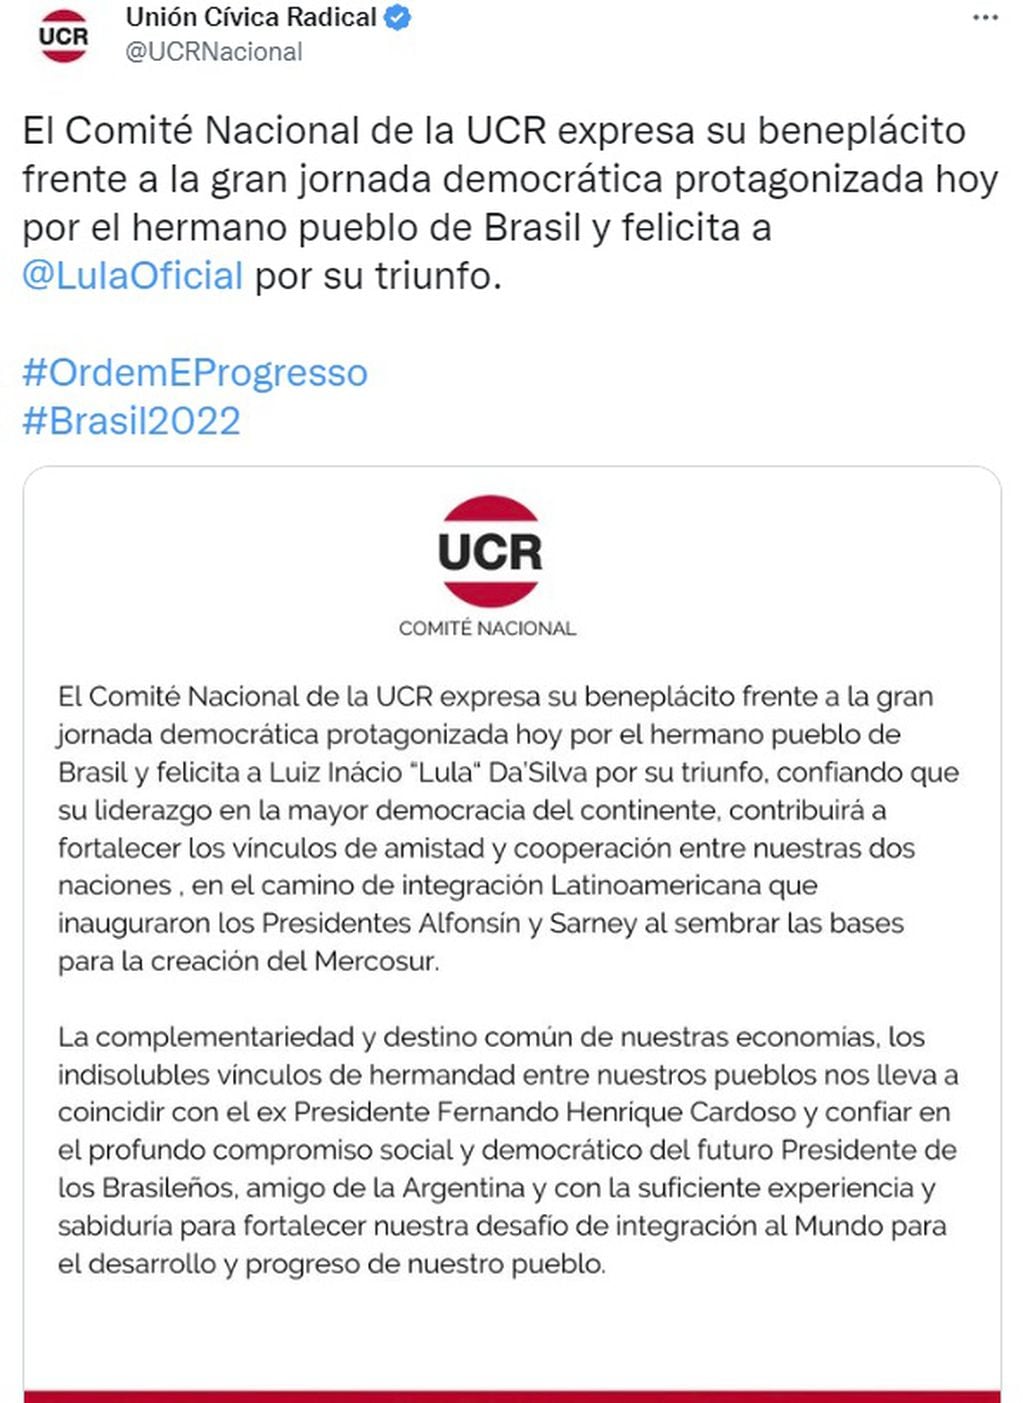 El comunicado de la UCR saludando a Lula da Silva